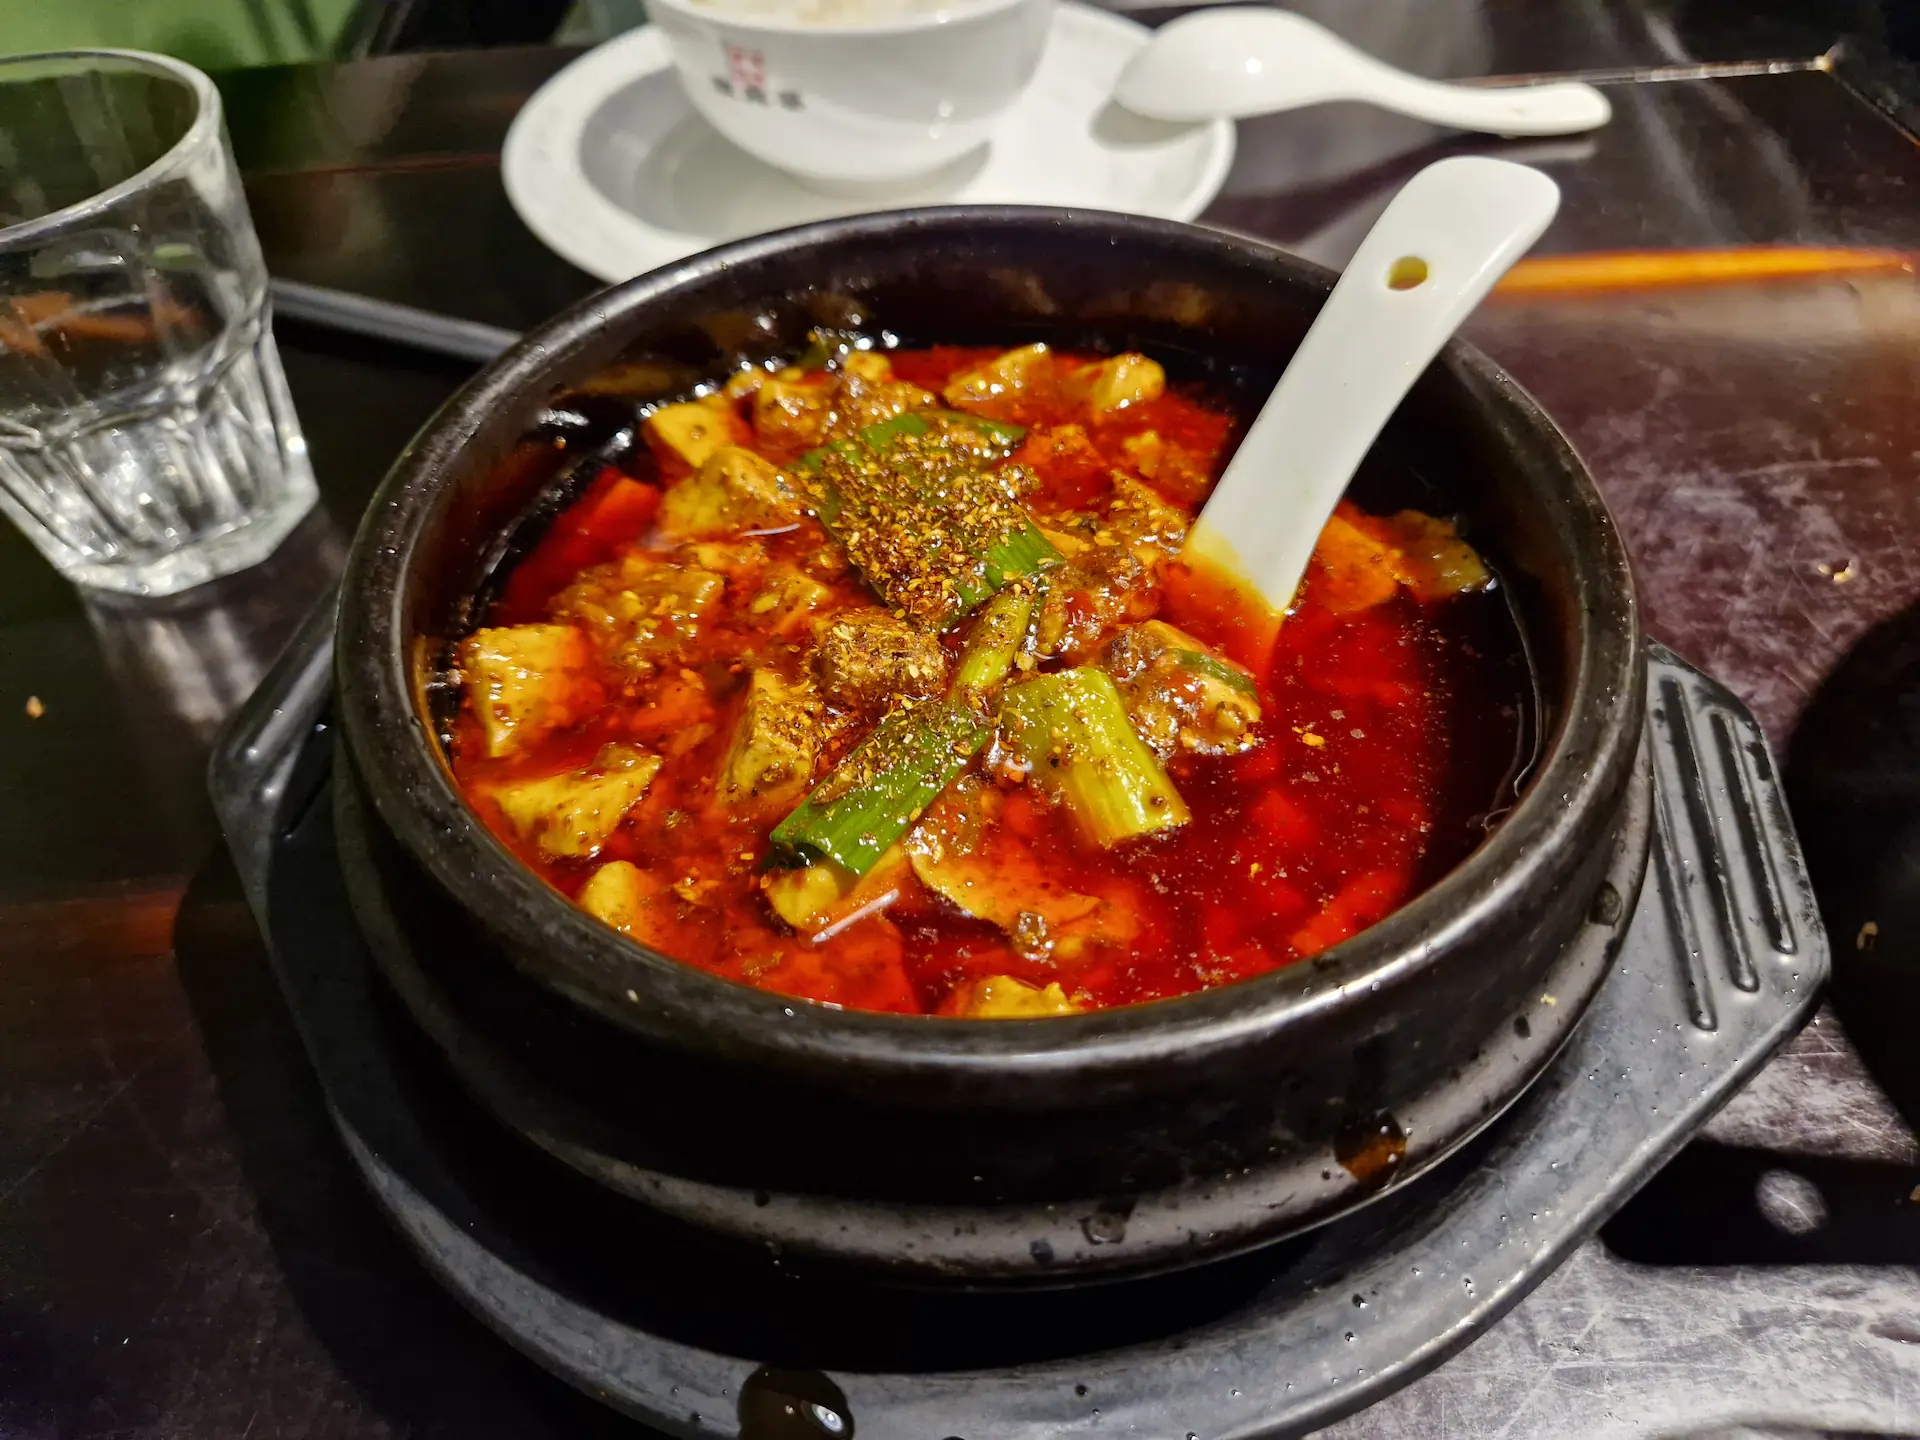 Dans un bol en terre cuite noire, le tofu soyeux baigne dans une sauce très rouge.